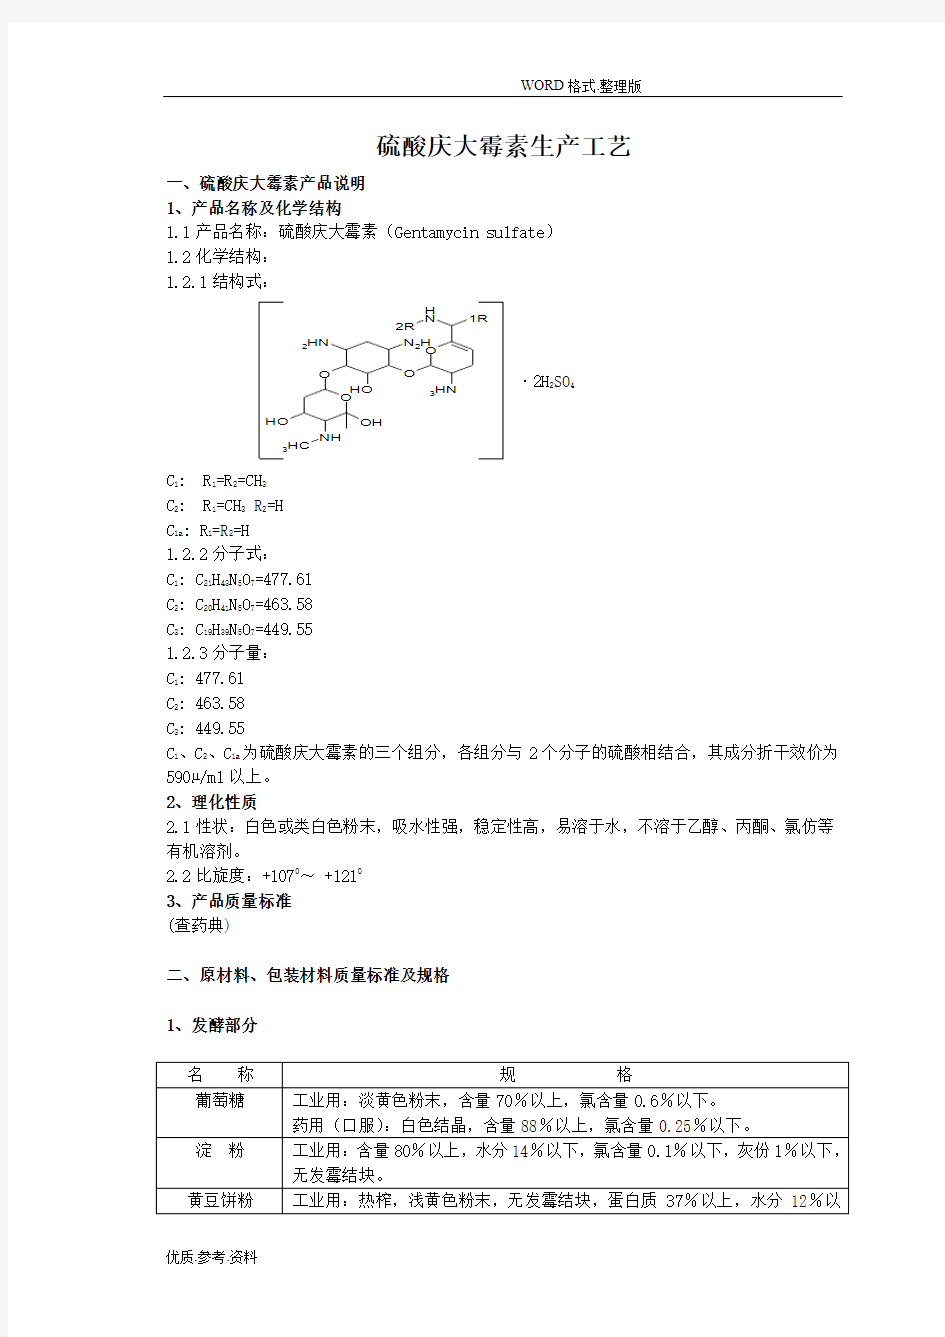 硫酸庆大霉素生产工艺设计流程图